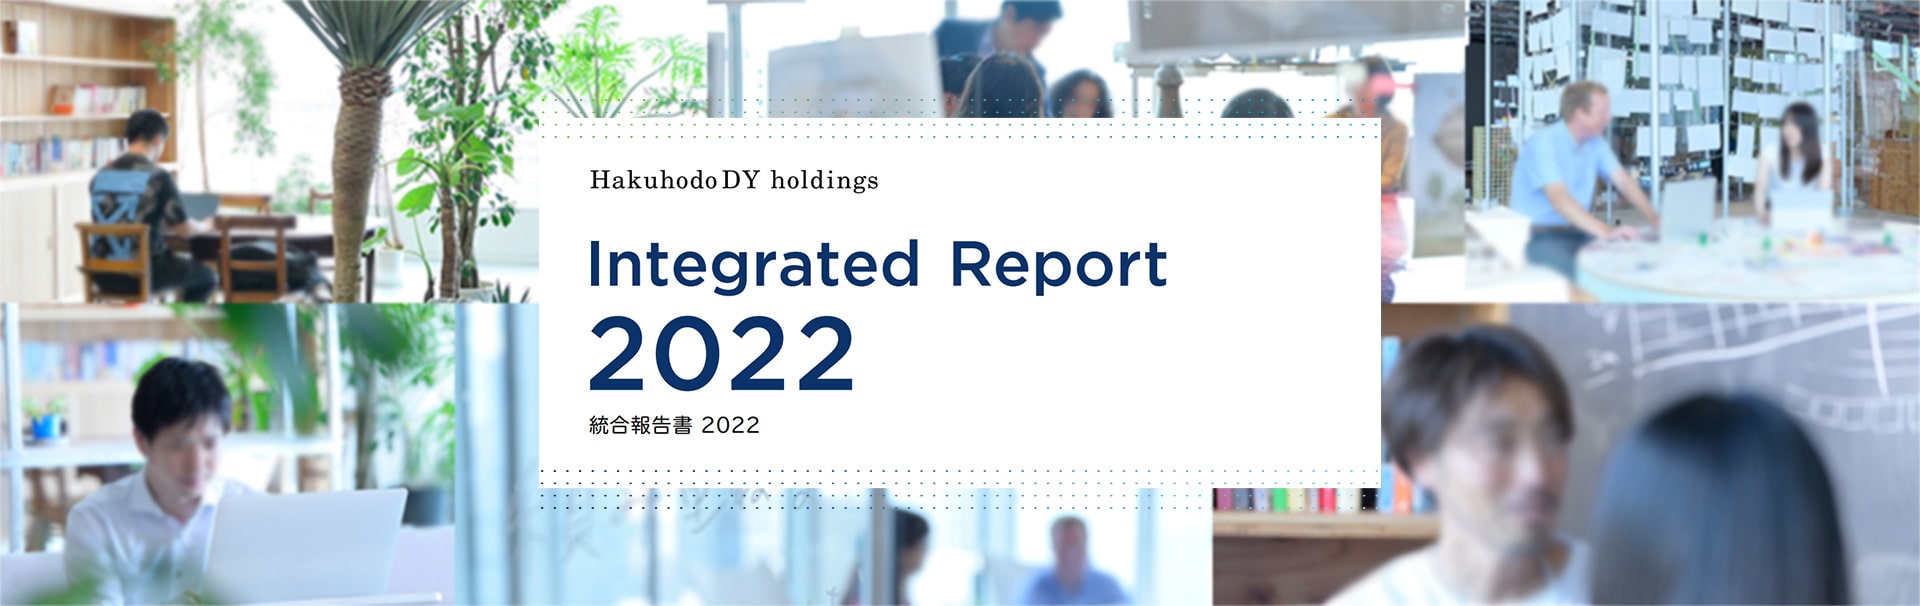 統合報告書2022メインビジュアル